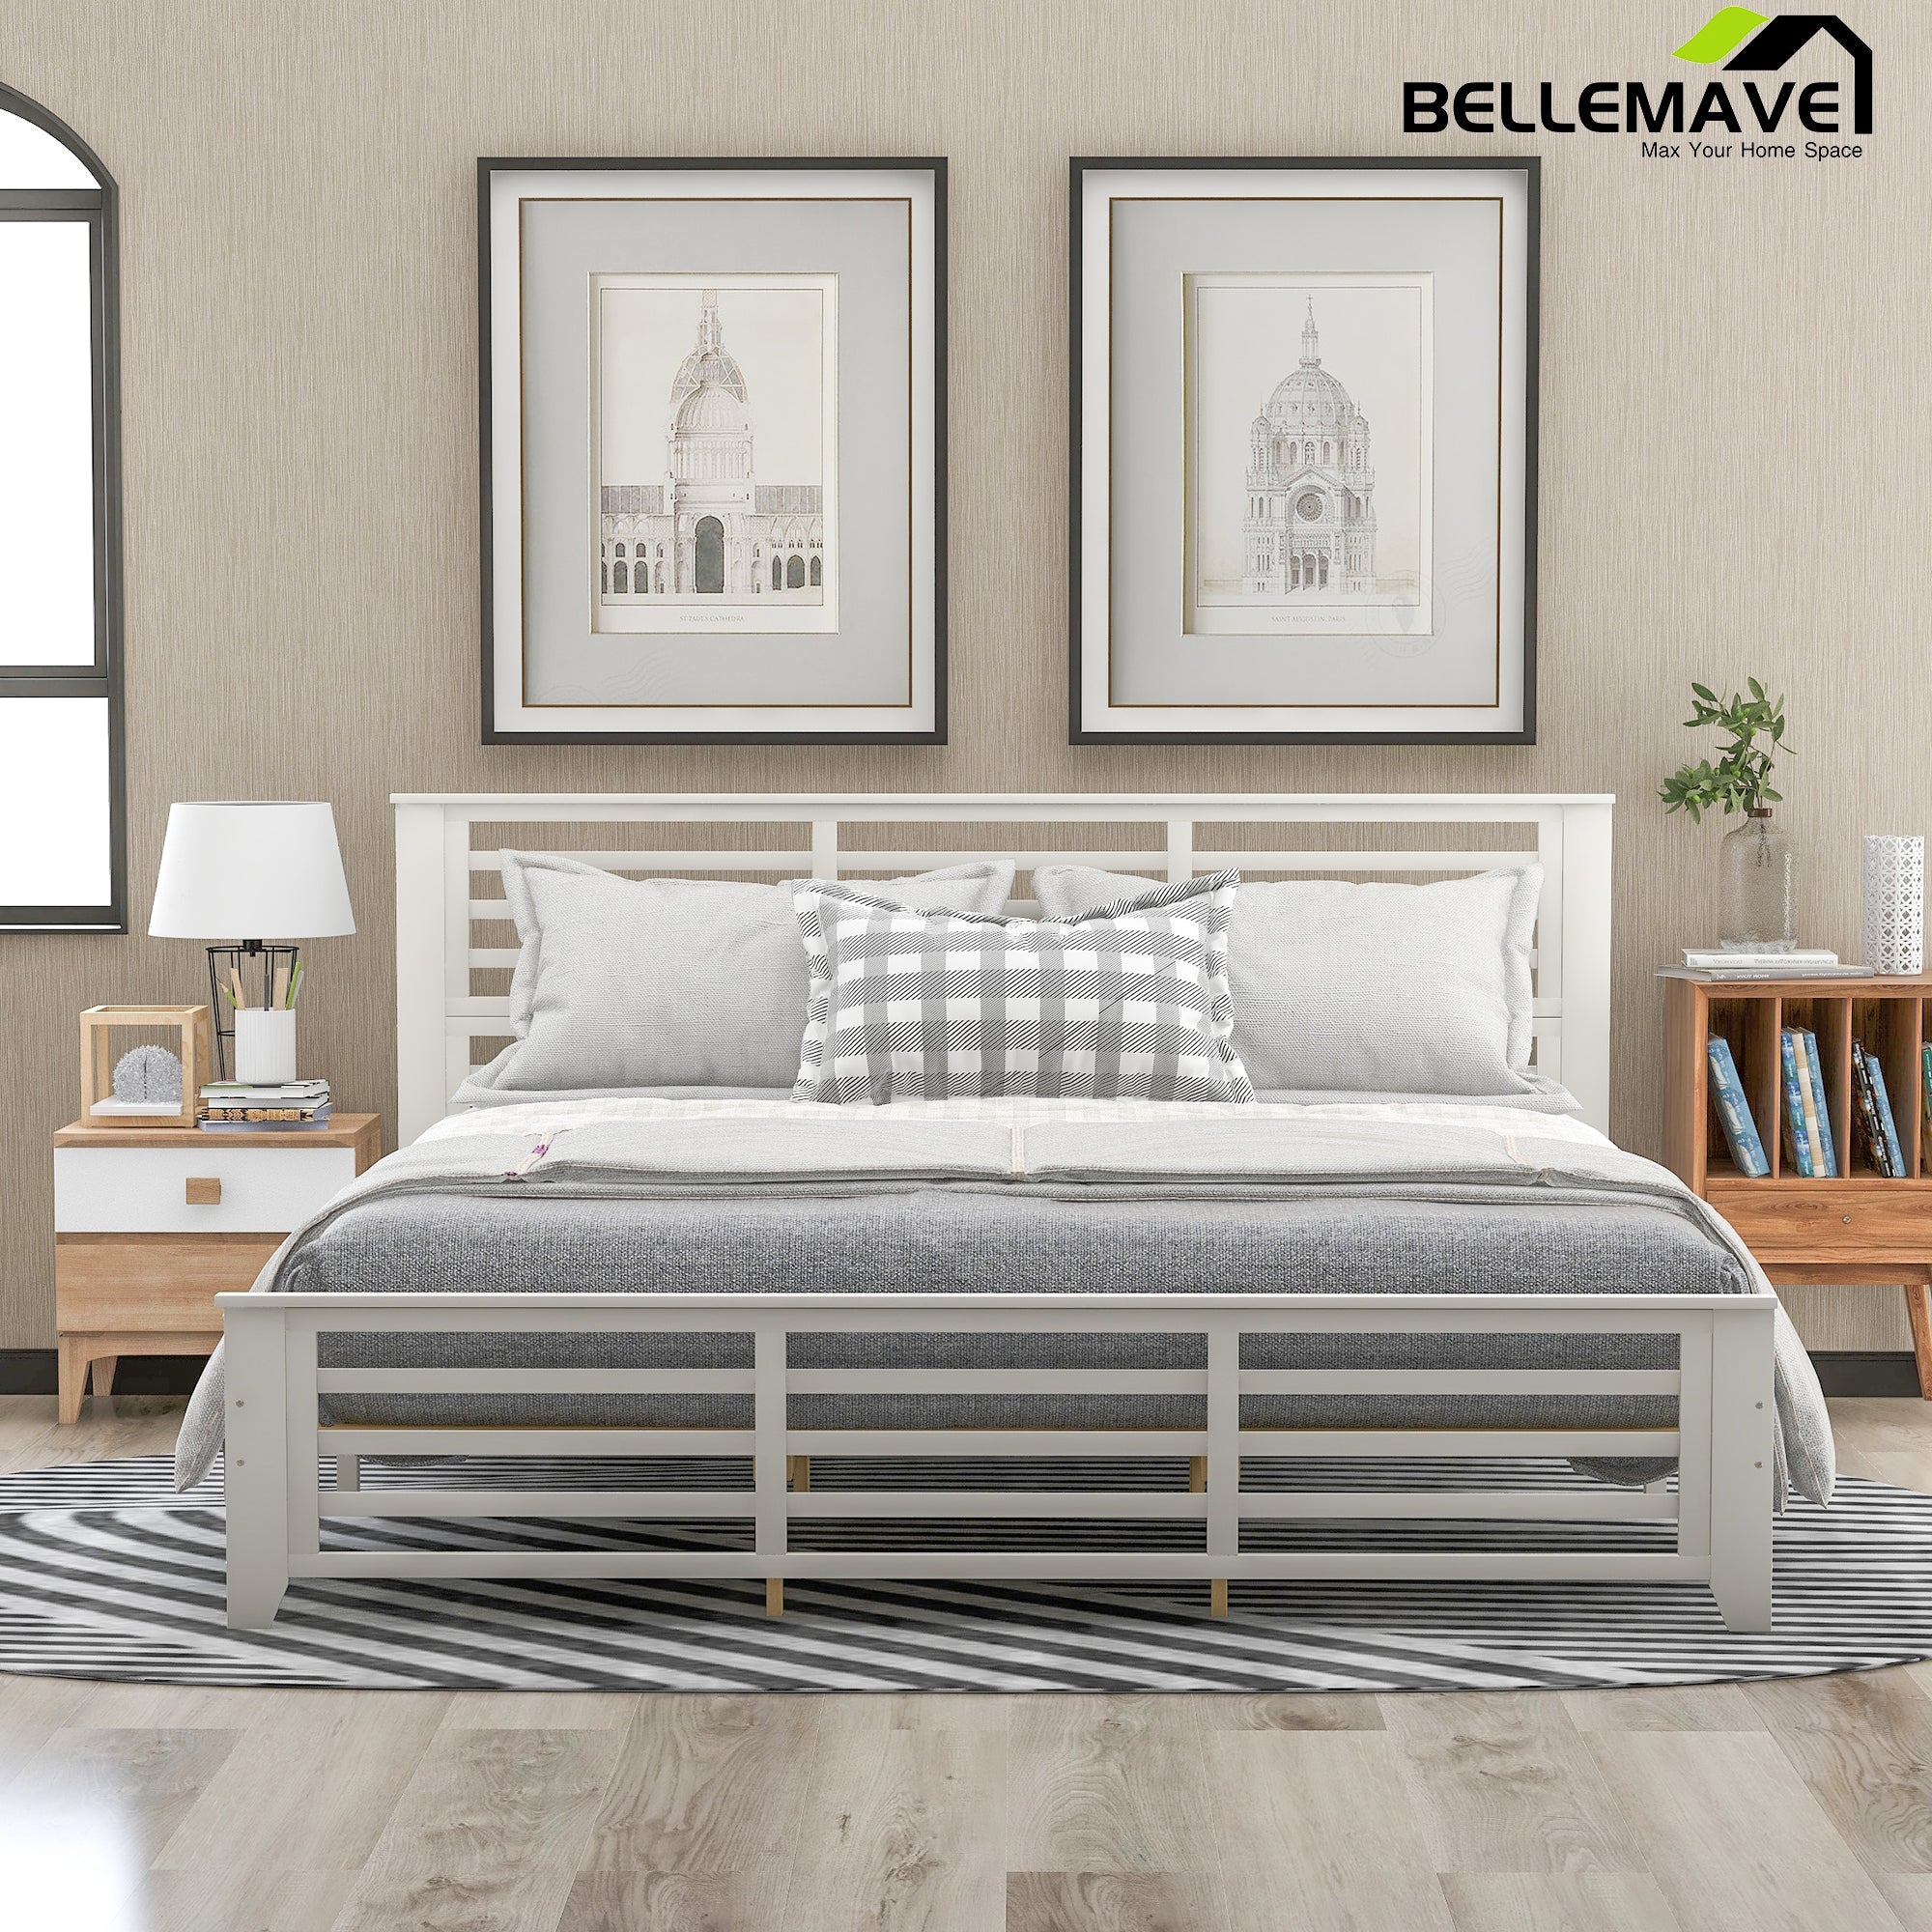 Bellemave King Size Platform Bed - Bellemave